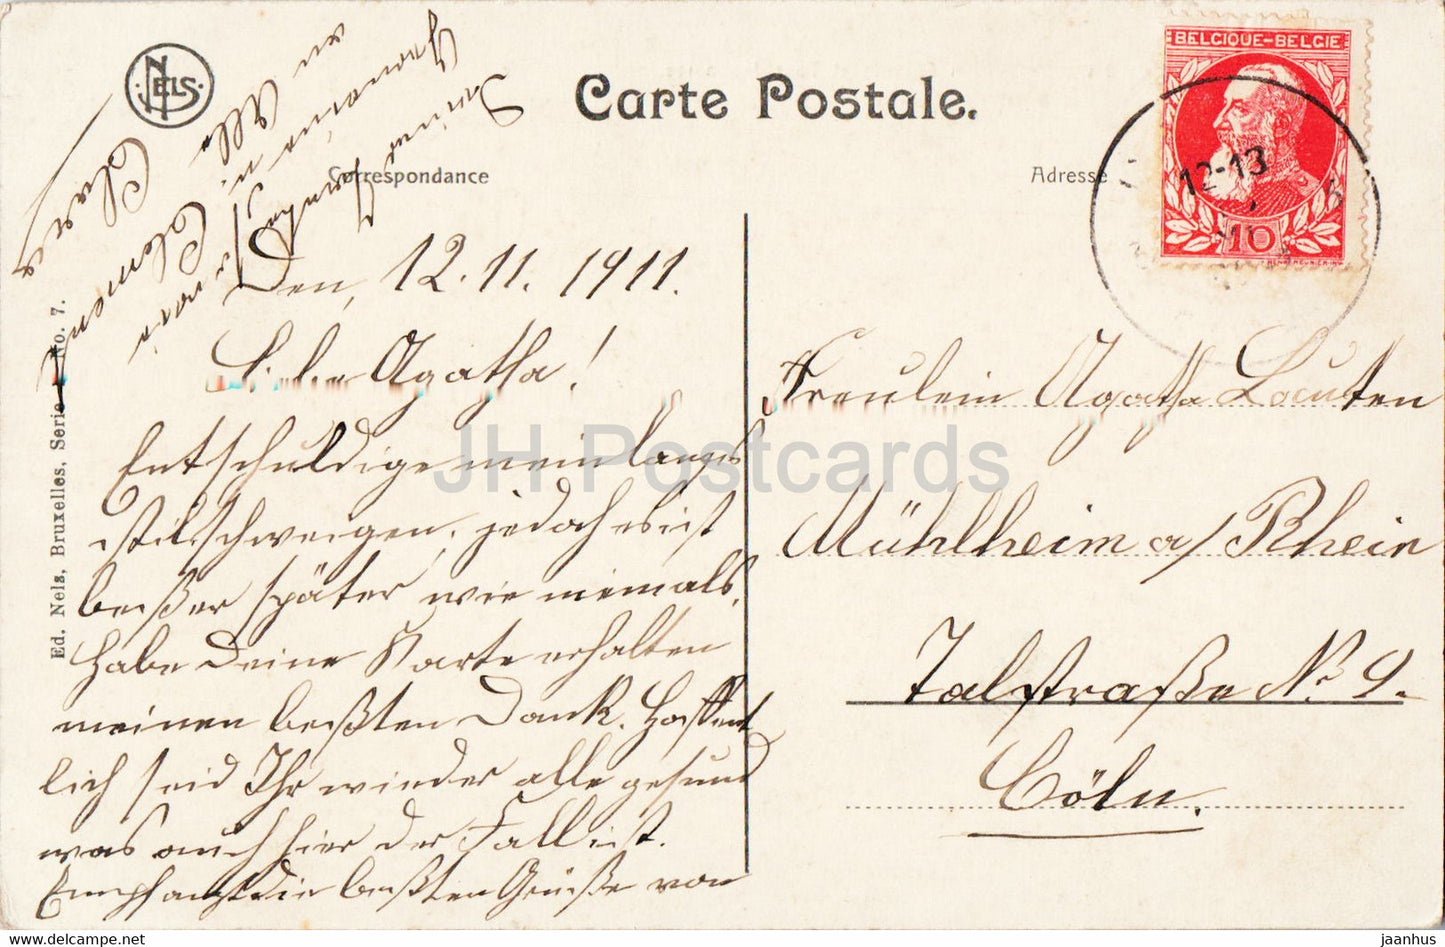 Bruxelles Laeken - Bruxelles - Pavillon Chinois et Tour Japonaise - 7 - carte postale ancienne - 1911 - Belgique - utilisé